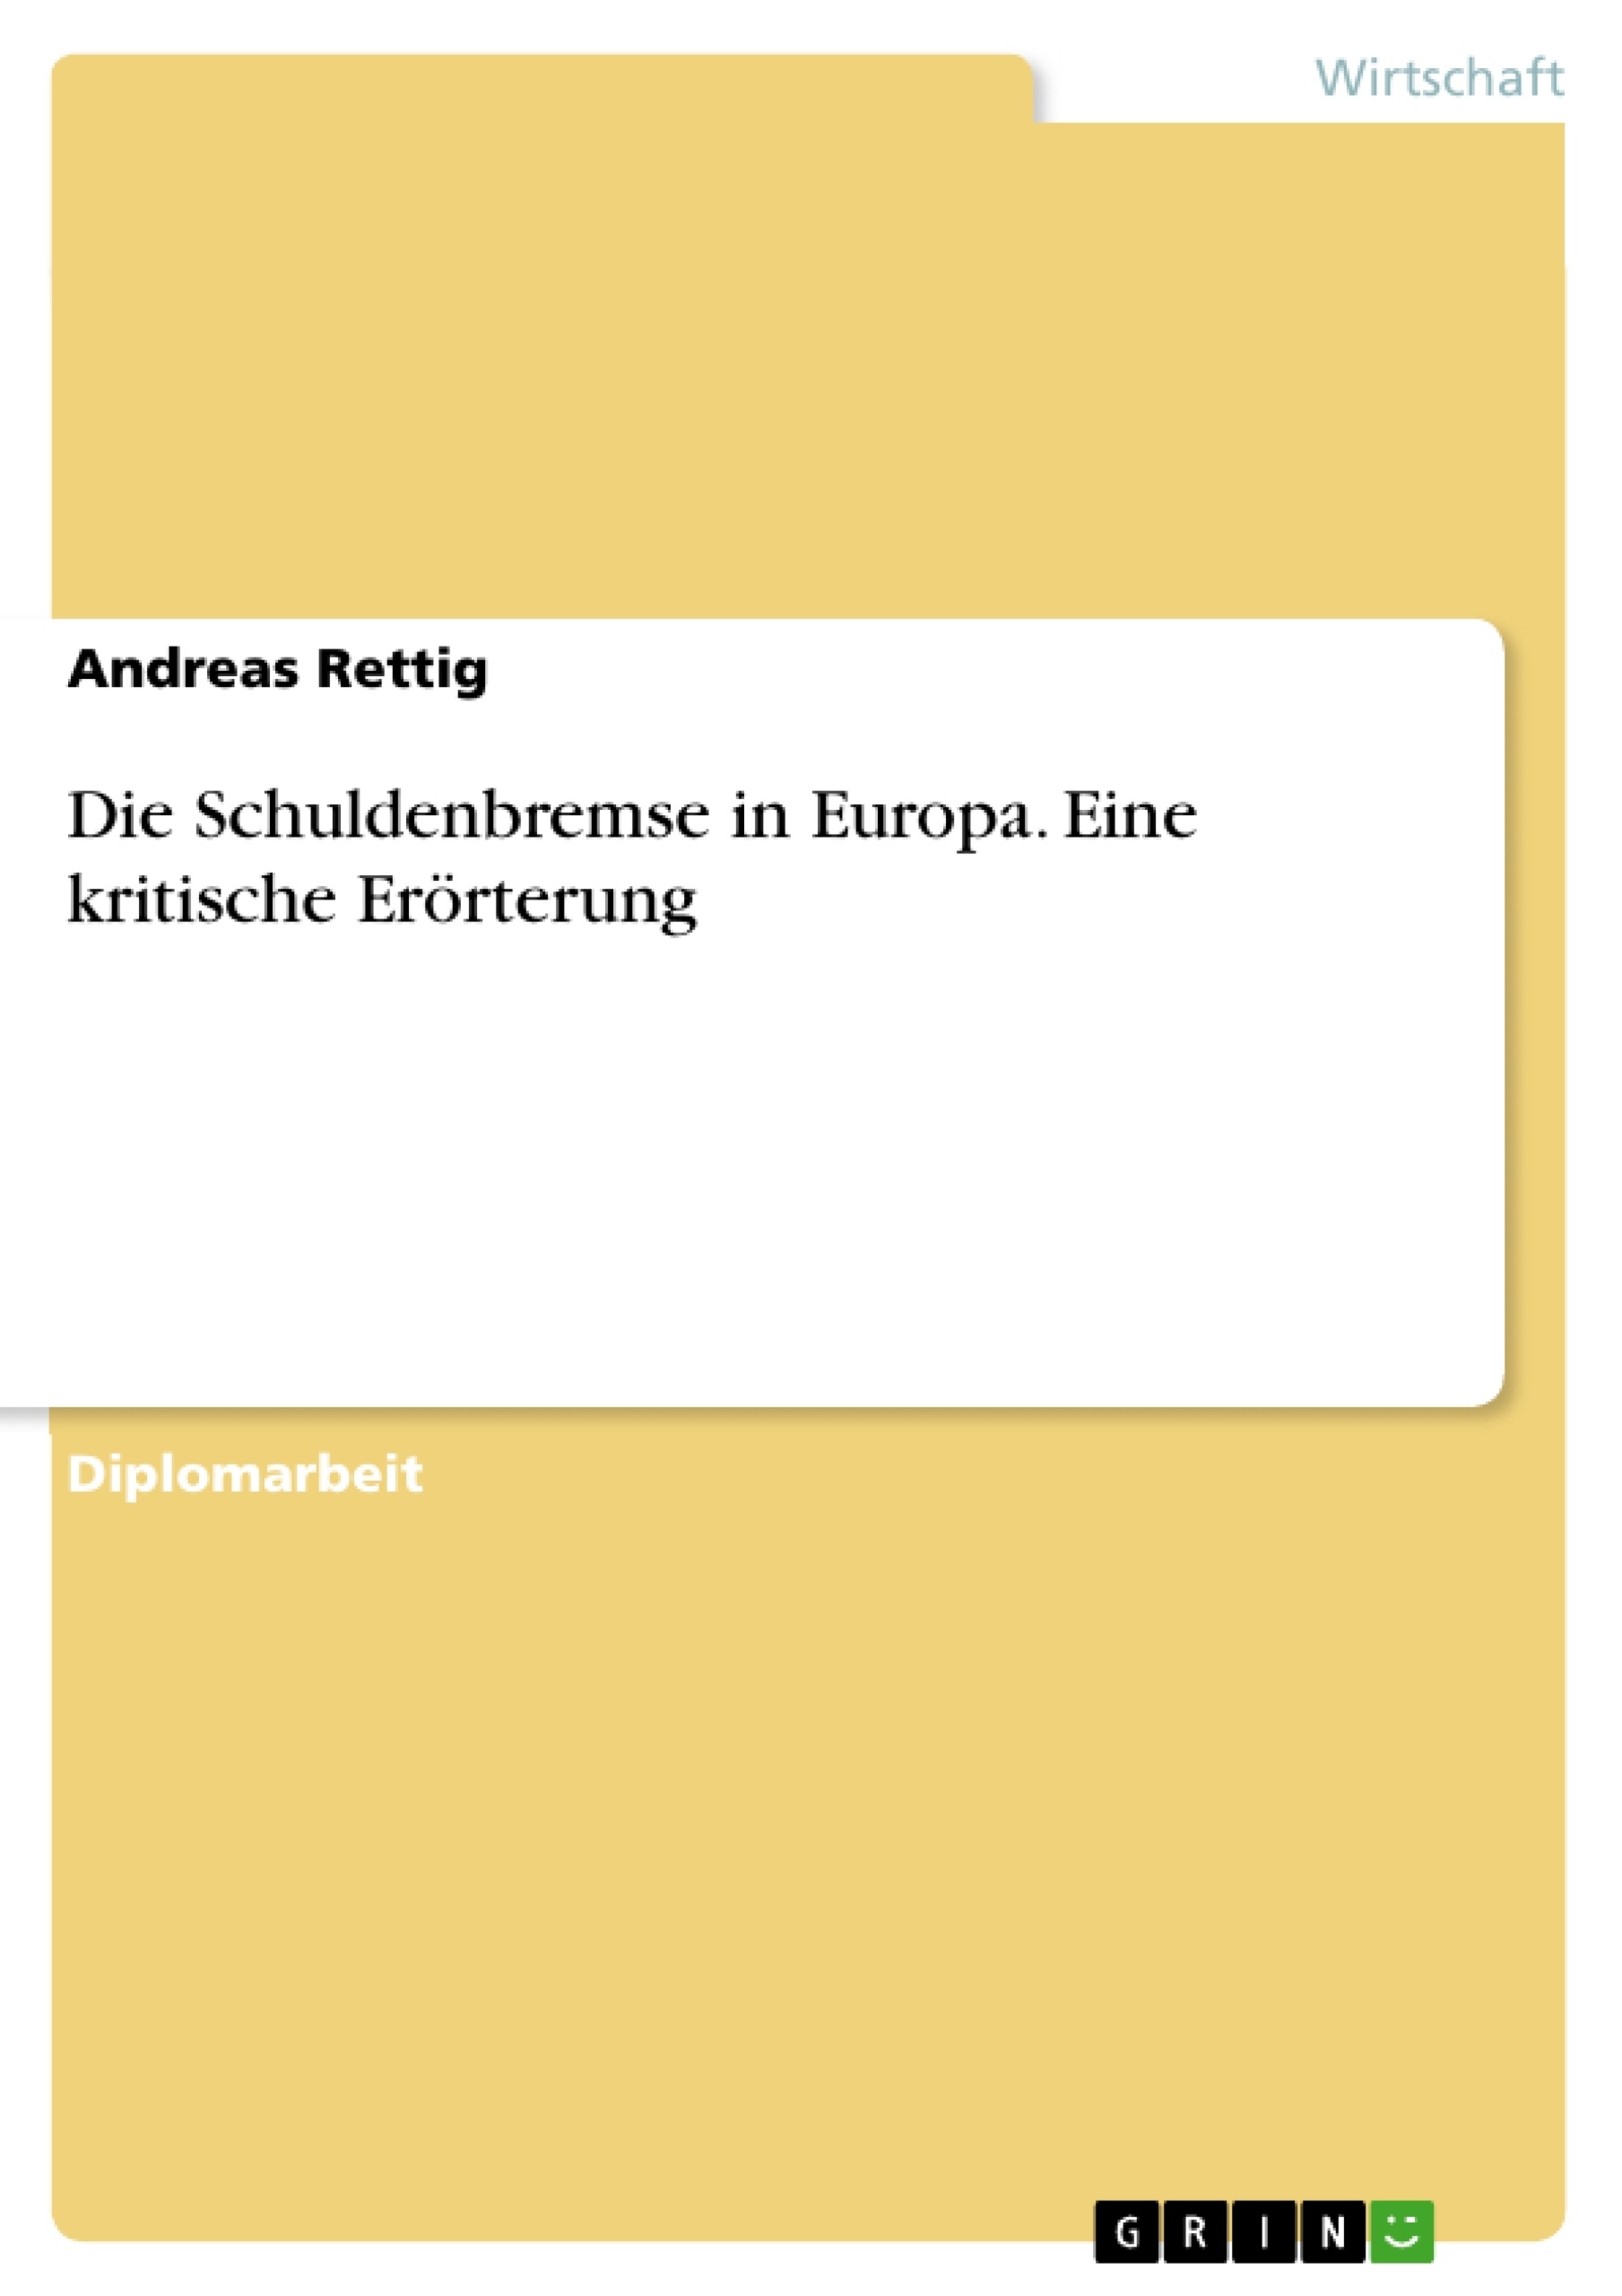 Título: Die Schuldenbremse in Europa. Eine kritische Erörterung